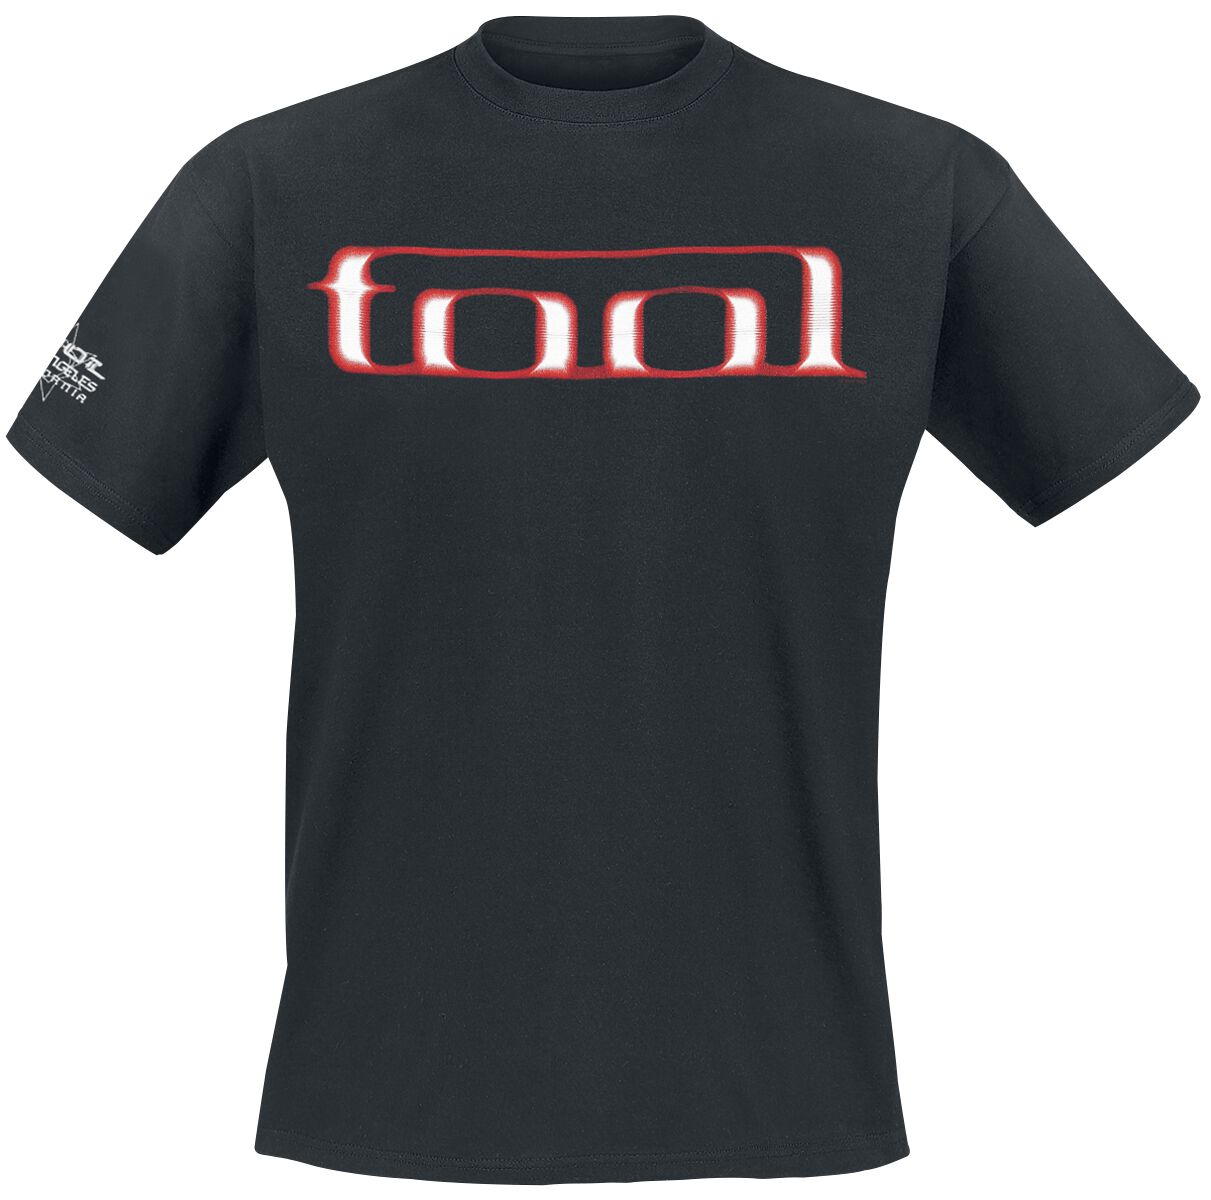 Tool T-Shirt - Grid Skull - S bis XXL - für Männer - Größe M - schwarz  - Lizenziertes Merchandise!